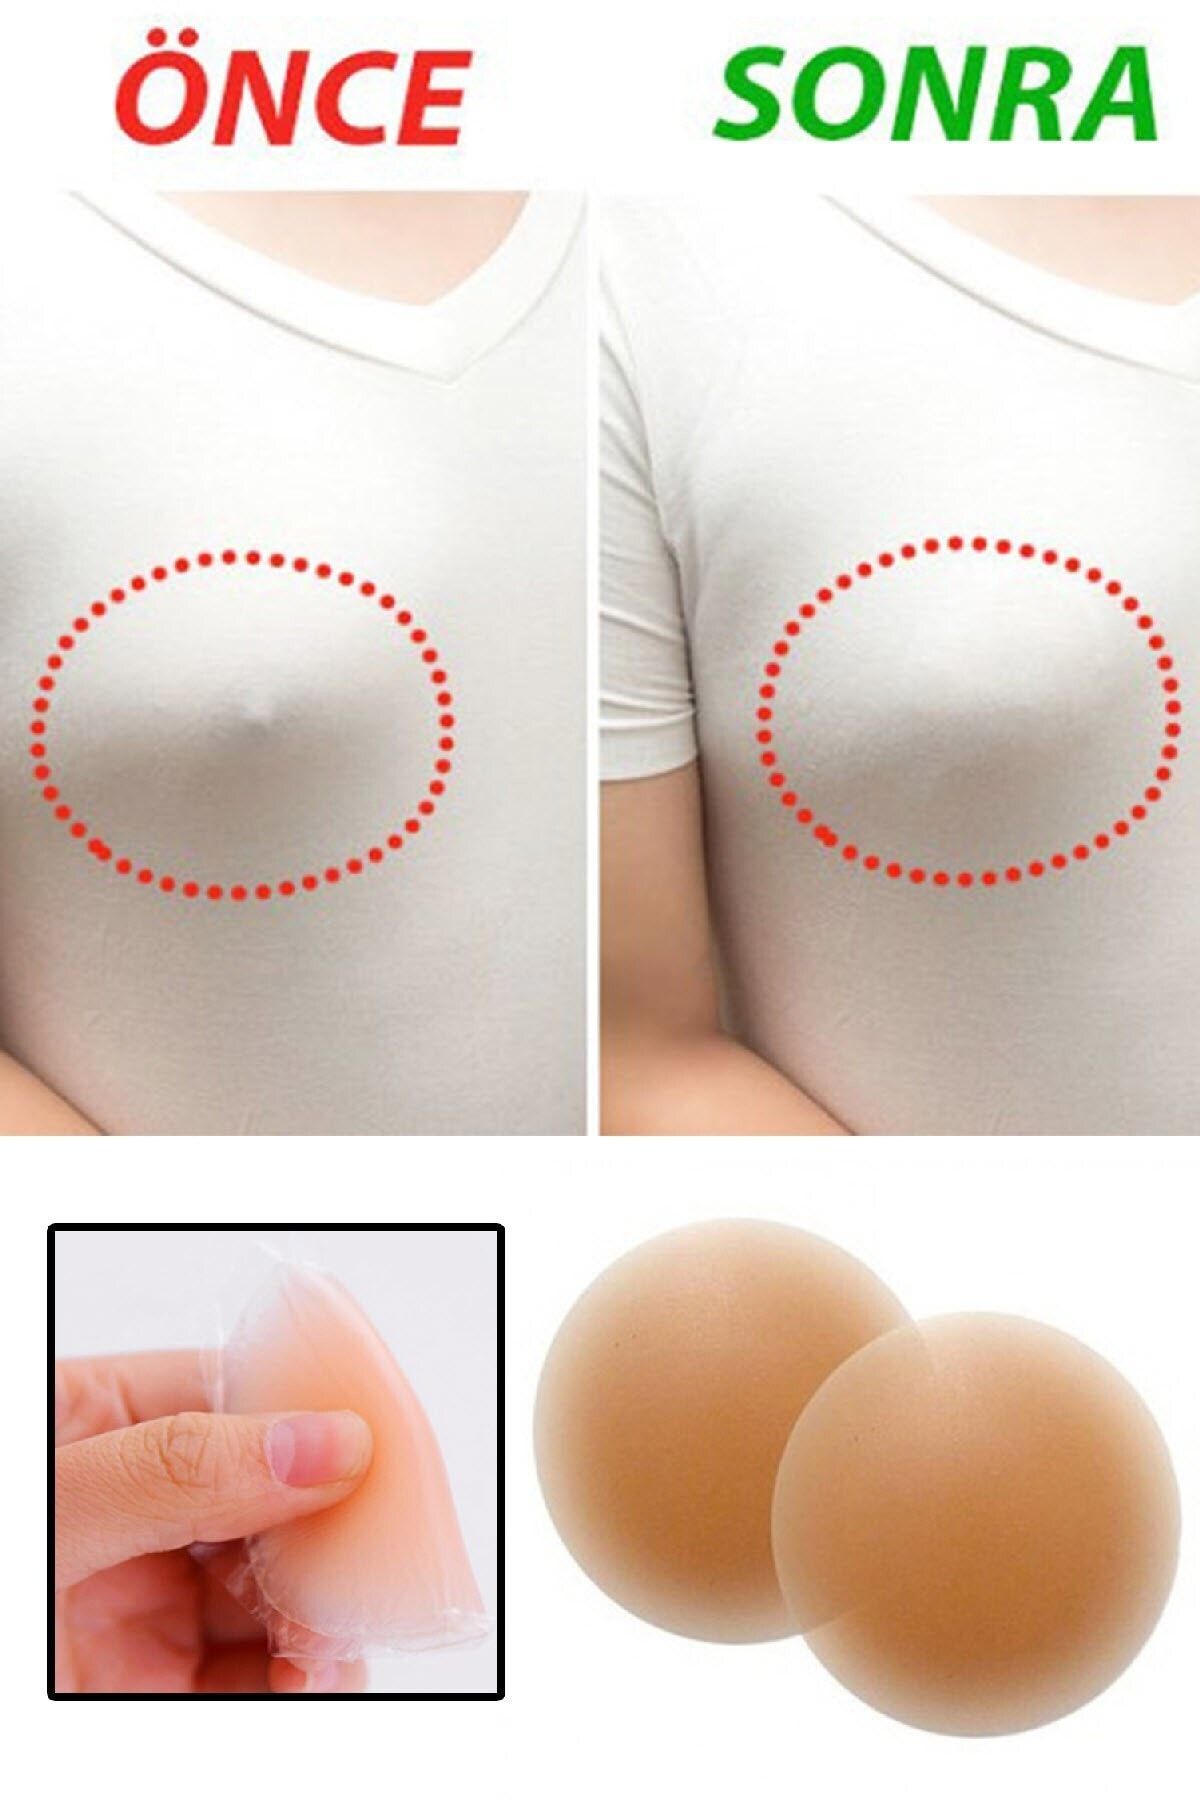 morponi Kadın Silikon Göğüs Ucu Kapatıcı Gizleyici Bant Aparat Nipple Pad